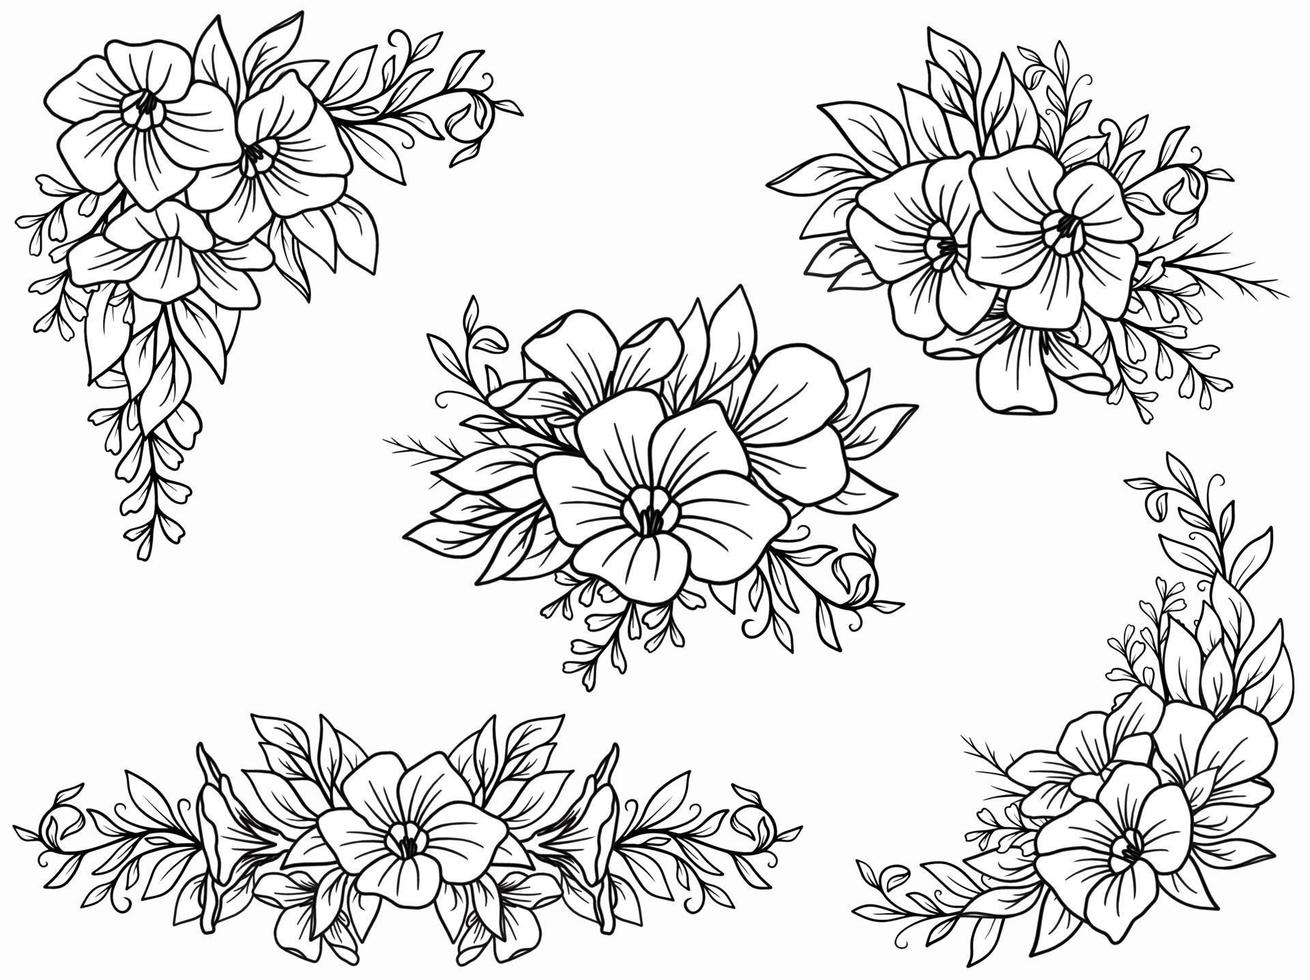 Blumenarrangement mit handgezeichneter Strichzeichnung vektor